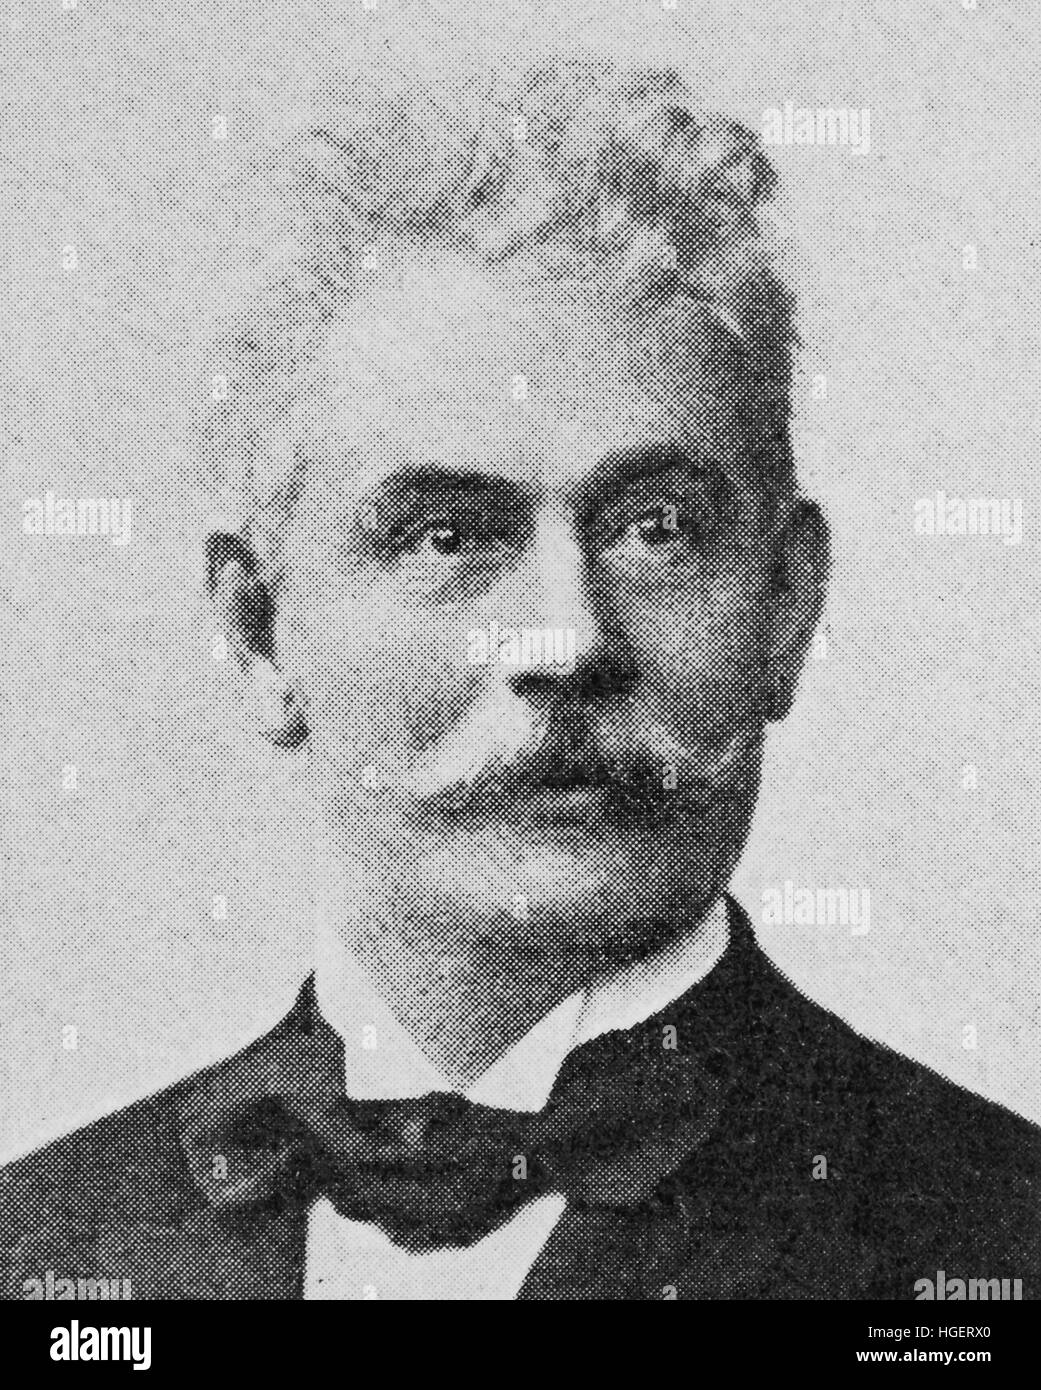 Hermann Credner, 1. Oktober 1841 - 21. Juli 1913, war ein deutscher Wissenschaftler, Reproduktion von einem Foto aus dem Jahr 1895, digital verbessert Stockfoto